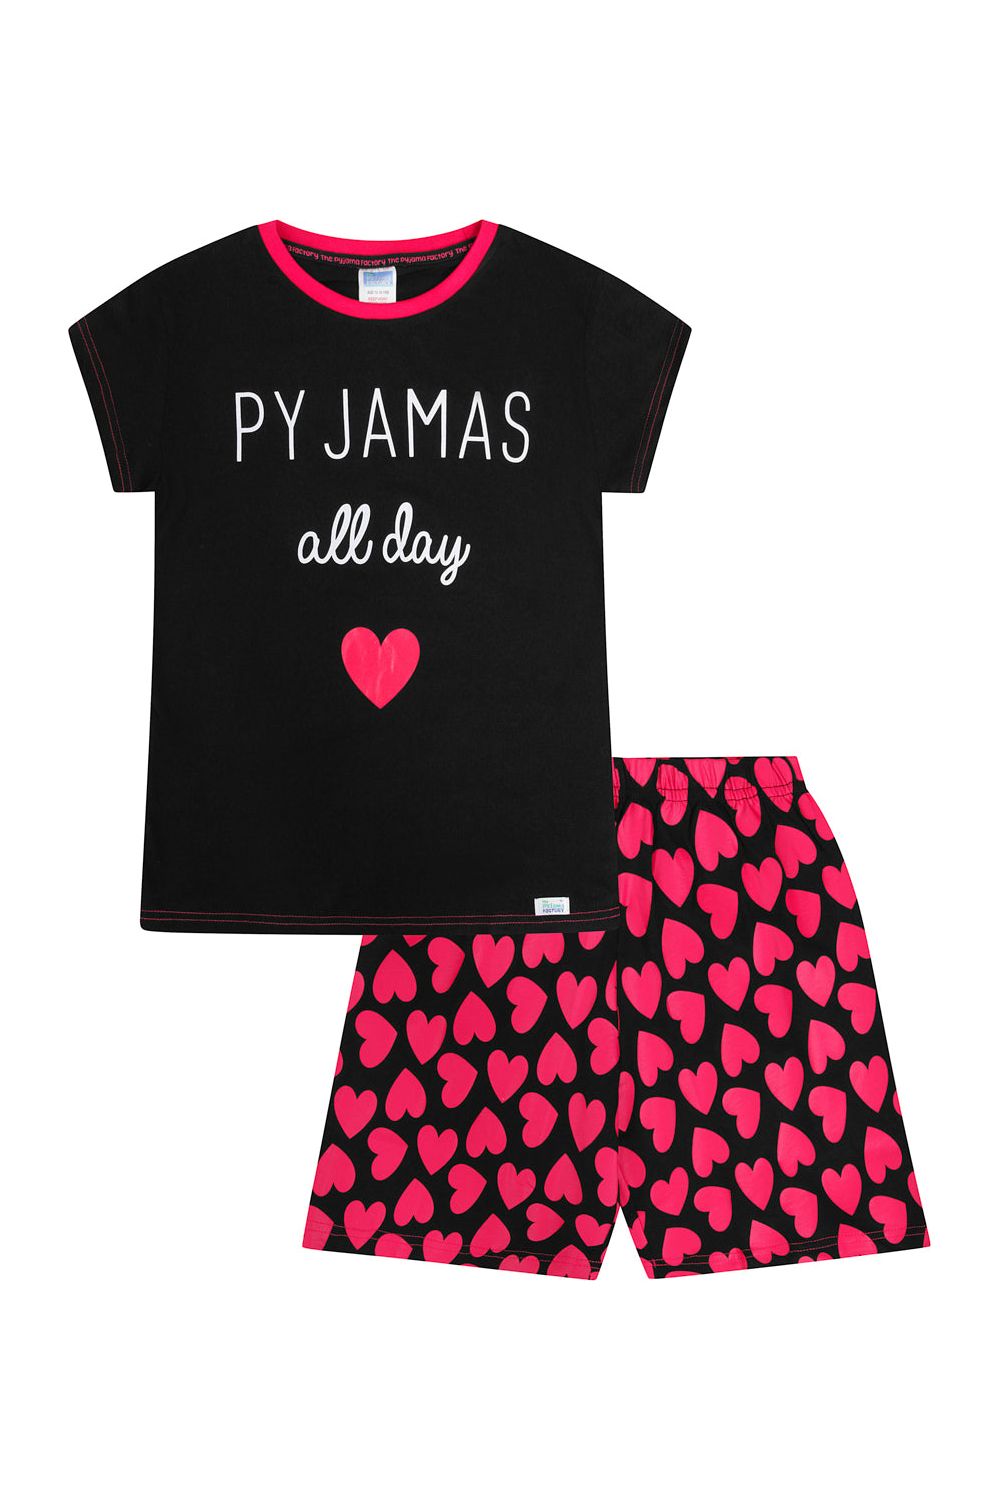 Pyjamas All Day Heart short Pyjamas - Pyjamas.com